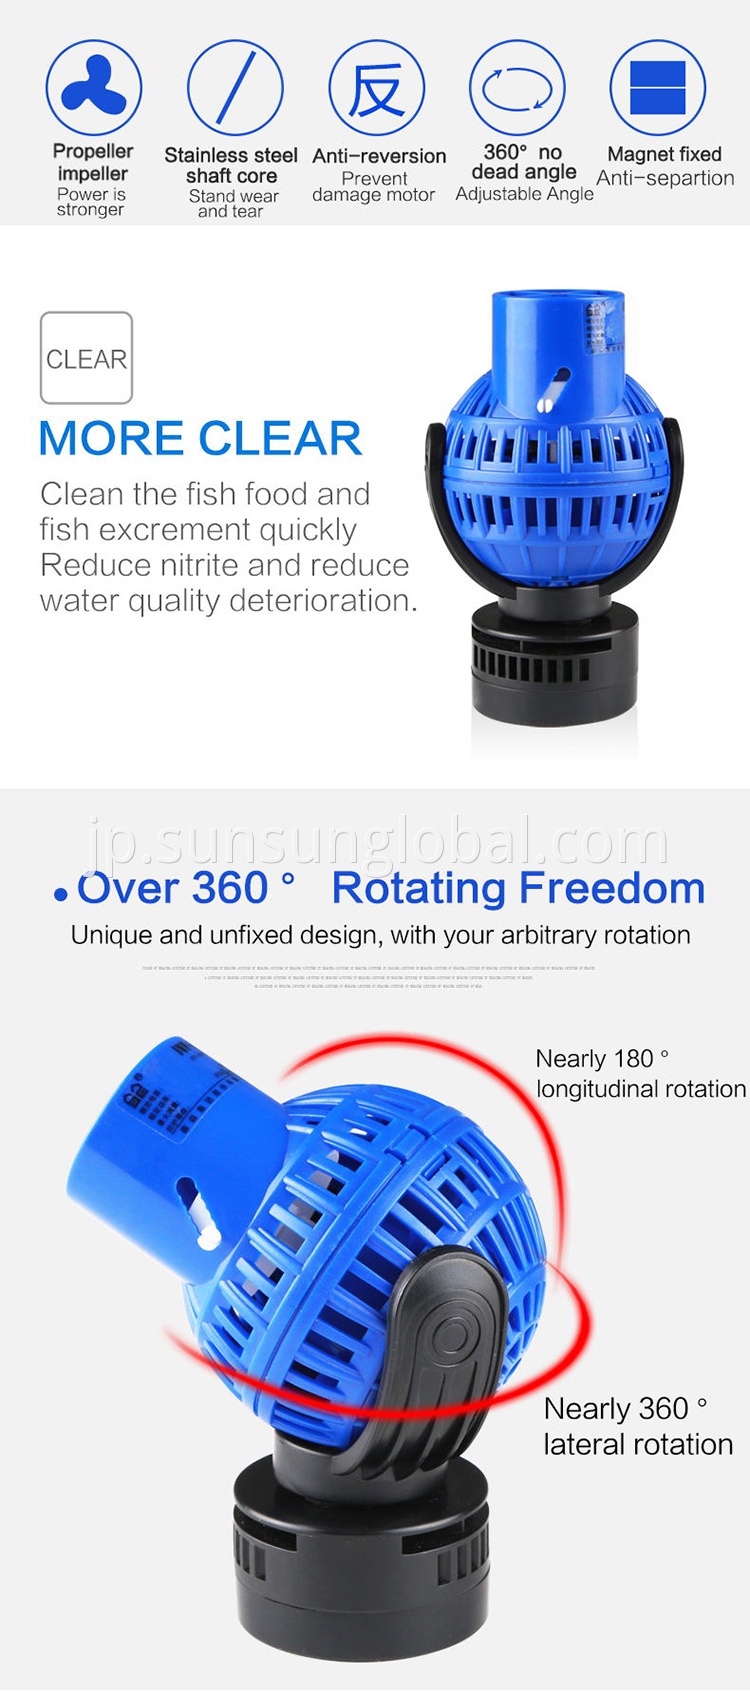 Sunsun Electric Mini Aquarium Wavemaker Water Pump